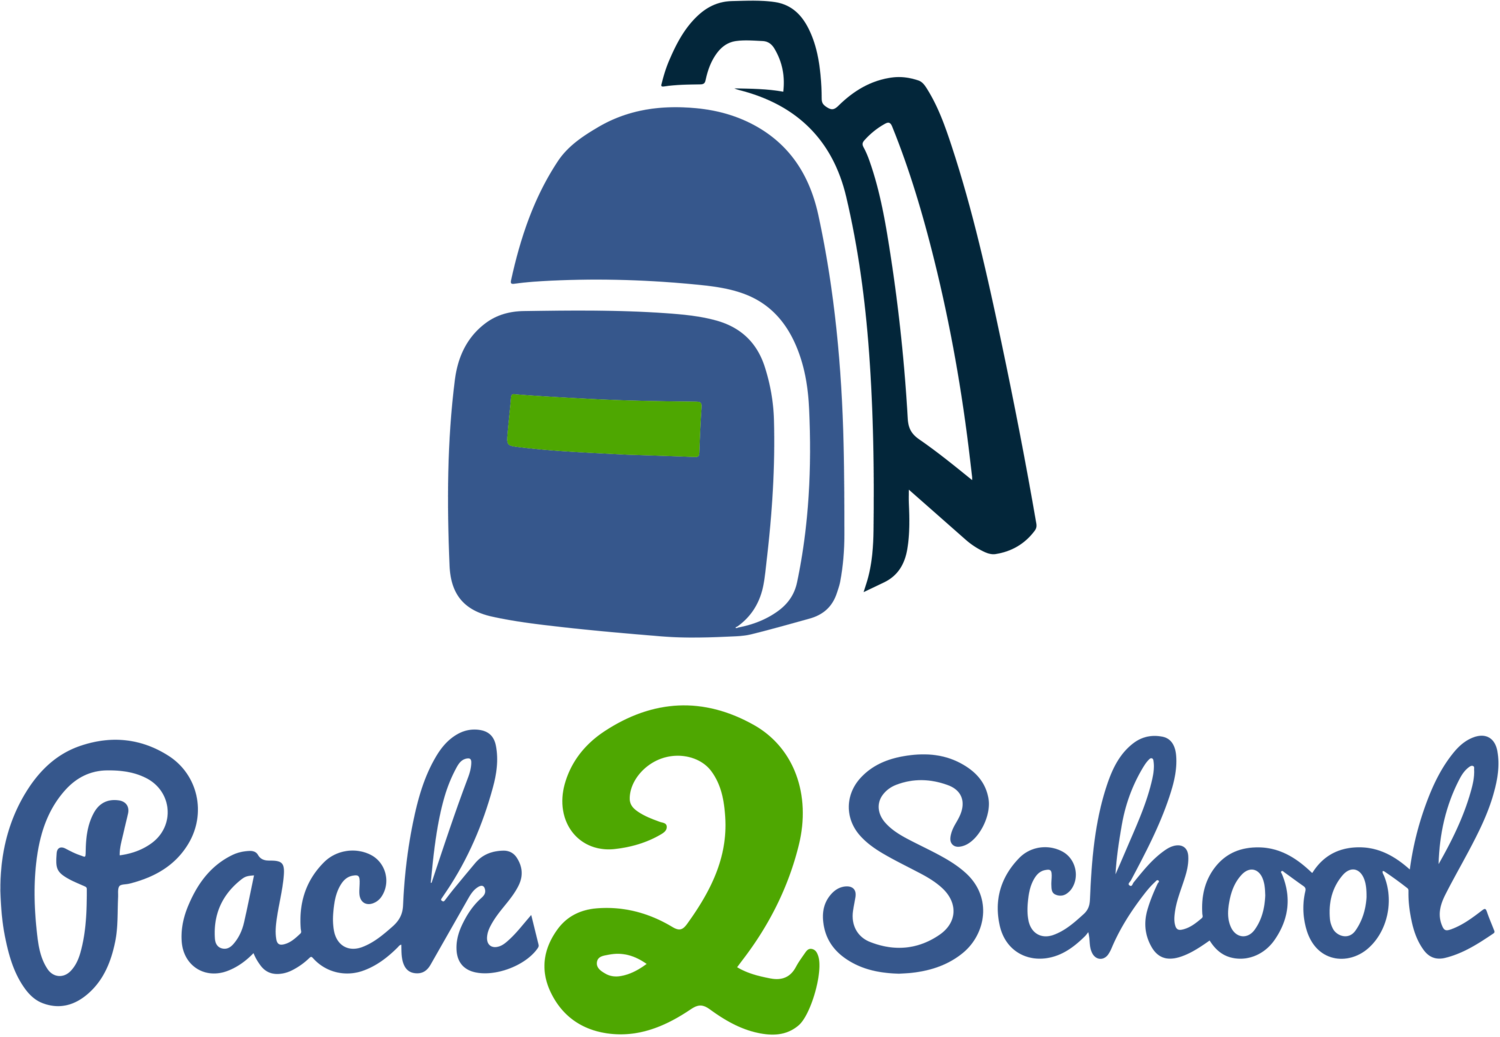 Pack2School